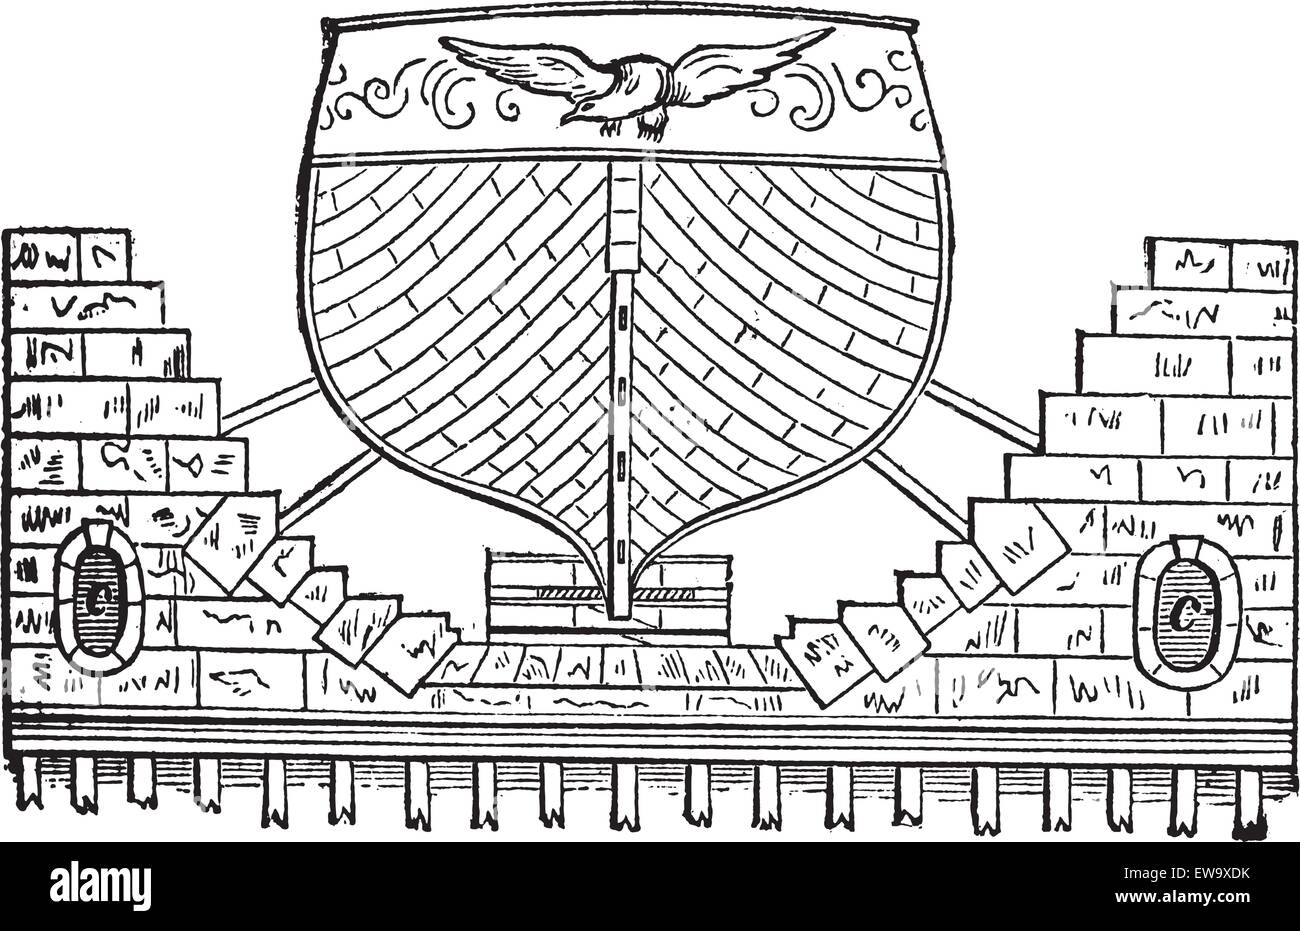 Bassin flottant, gravure d'époque. Ancien gravé illustration d'un bassin flottant avec le navire. Illustration de Vecteur